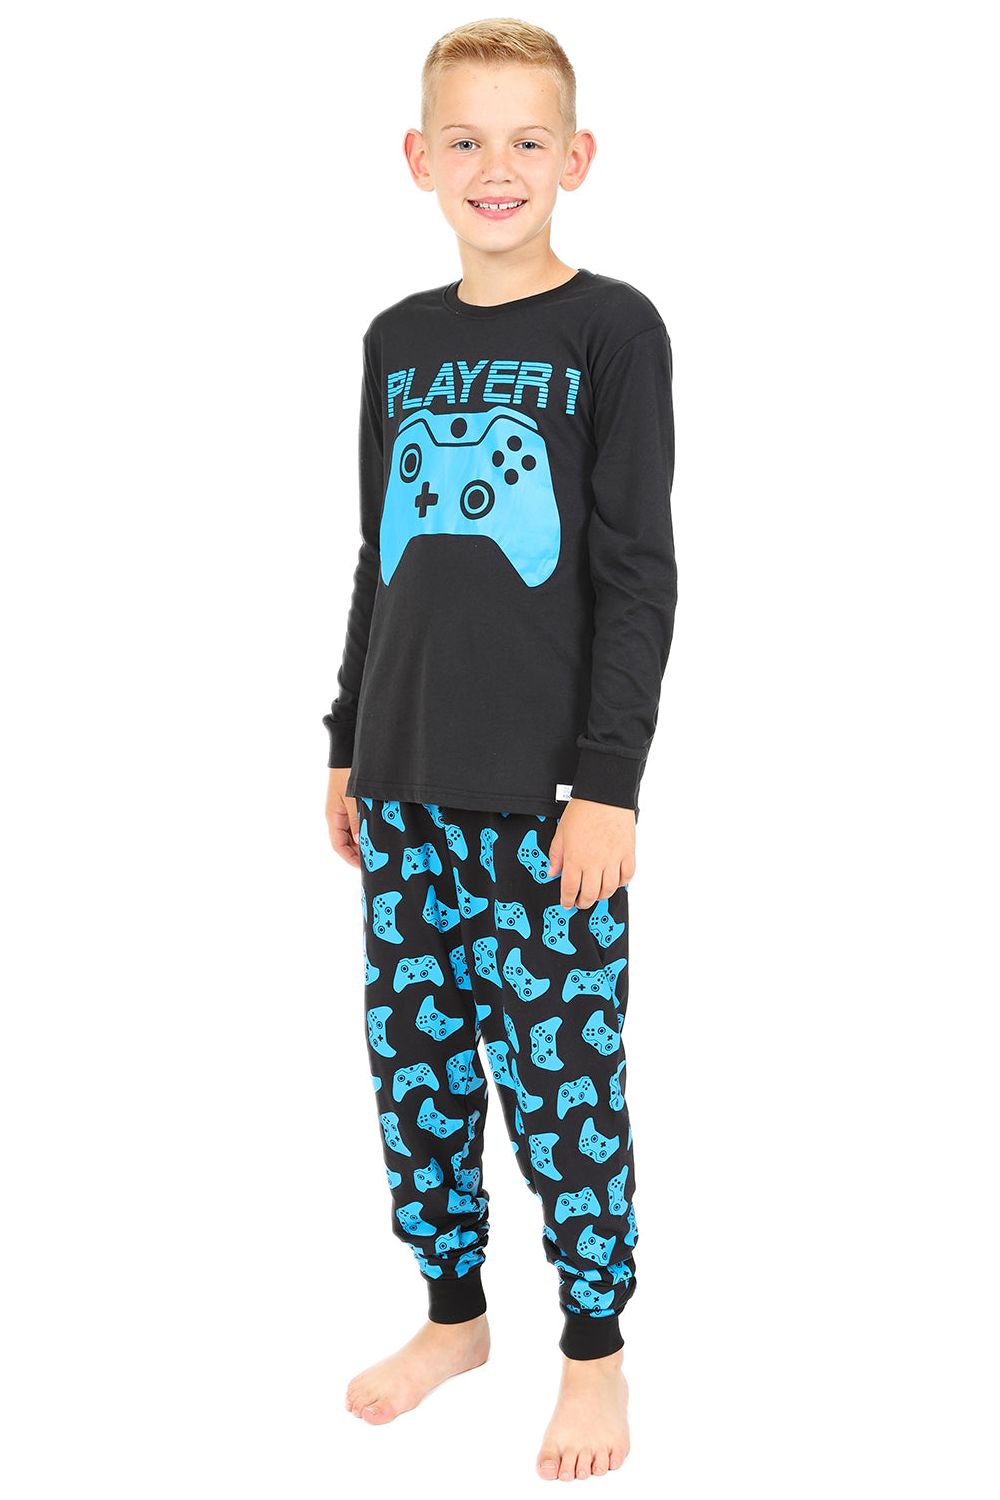 Player 1 Gaming Controller Blue Long Pyjamas